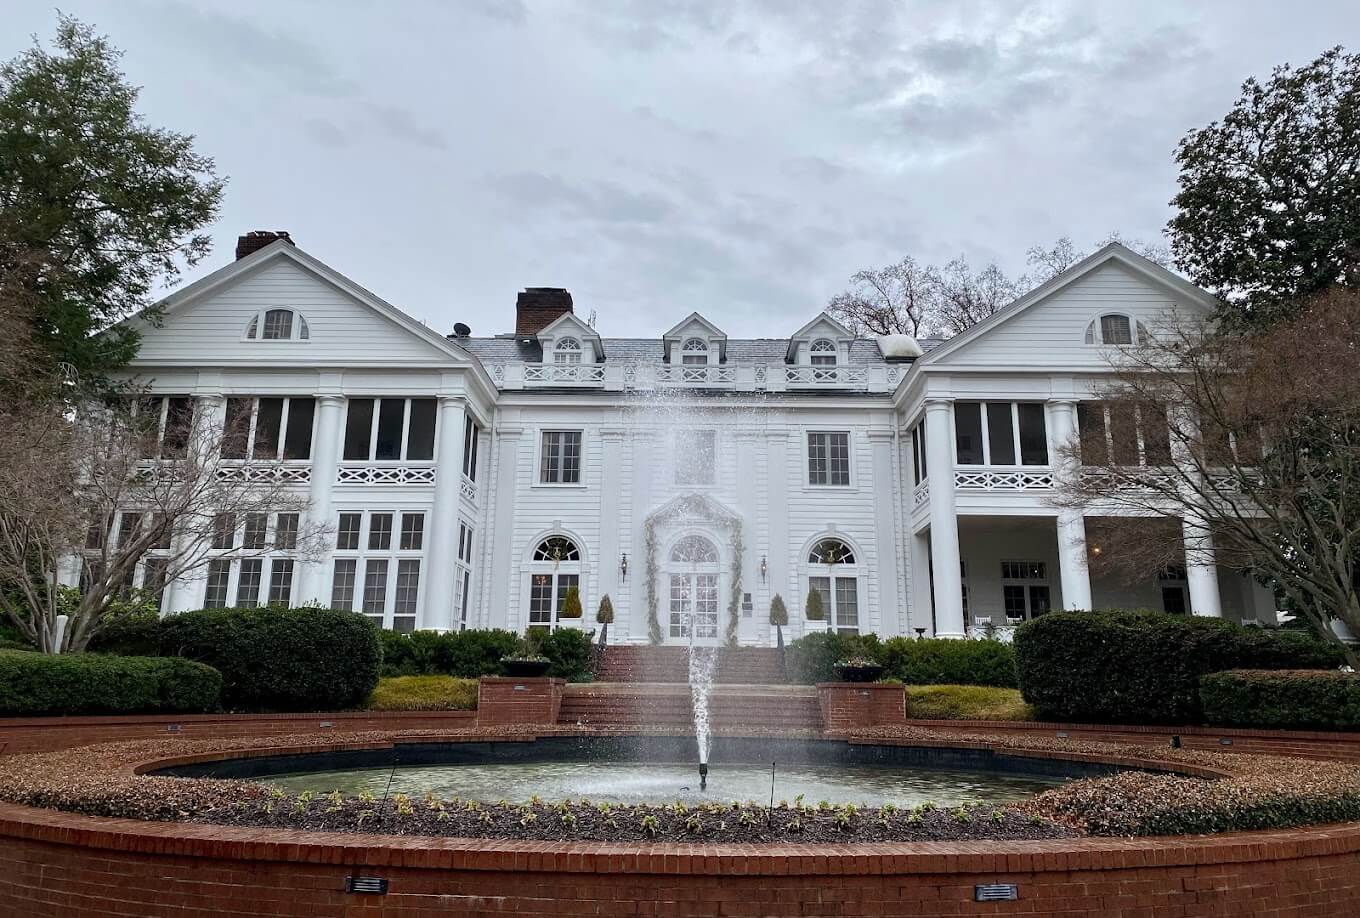 The Duke Mansion